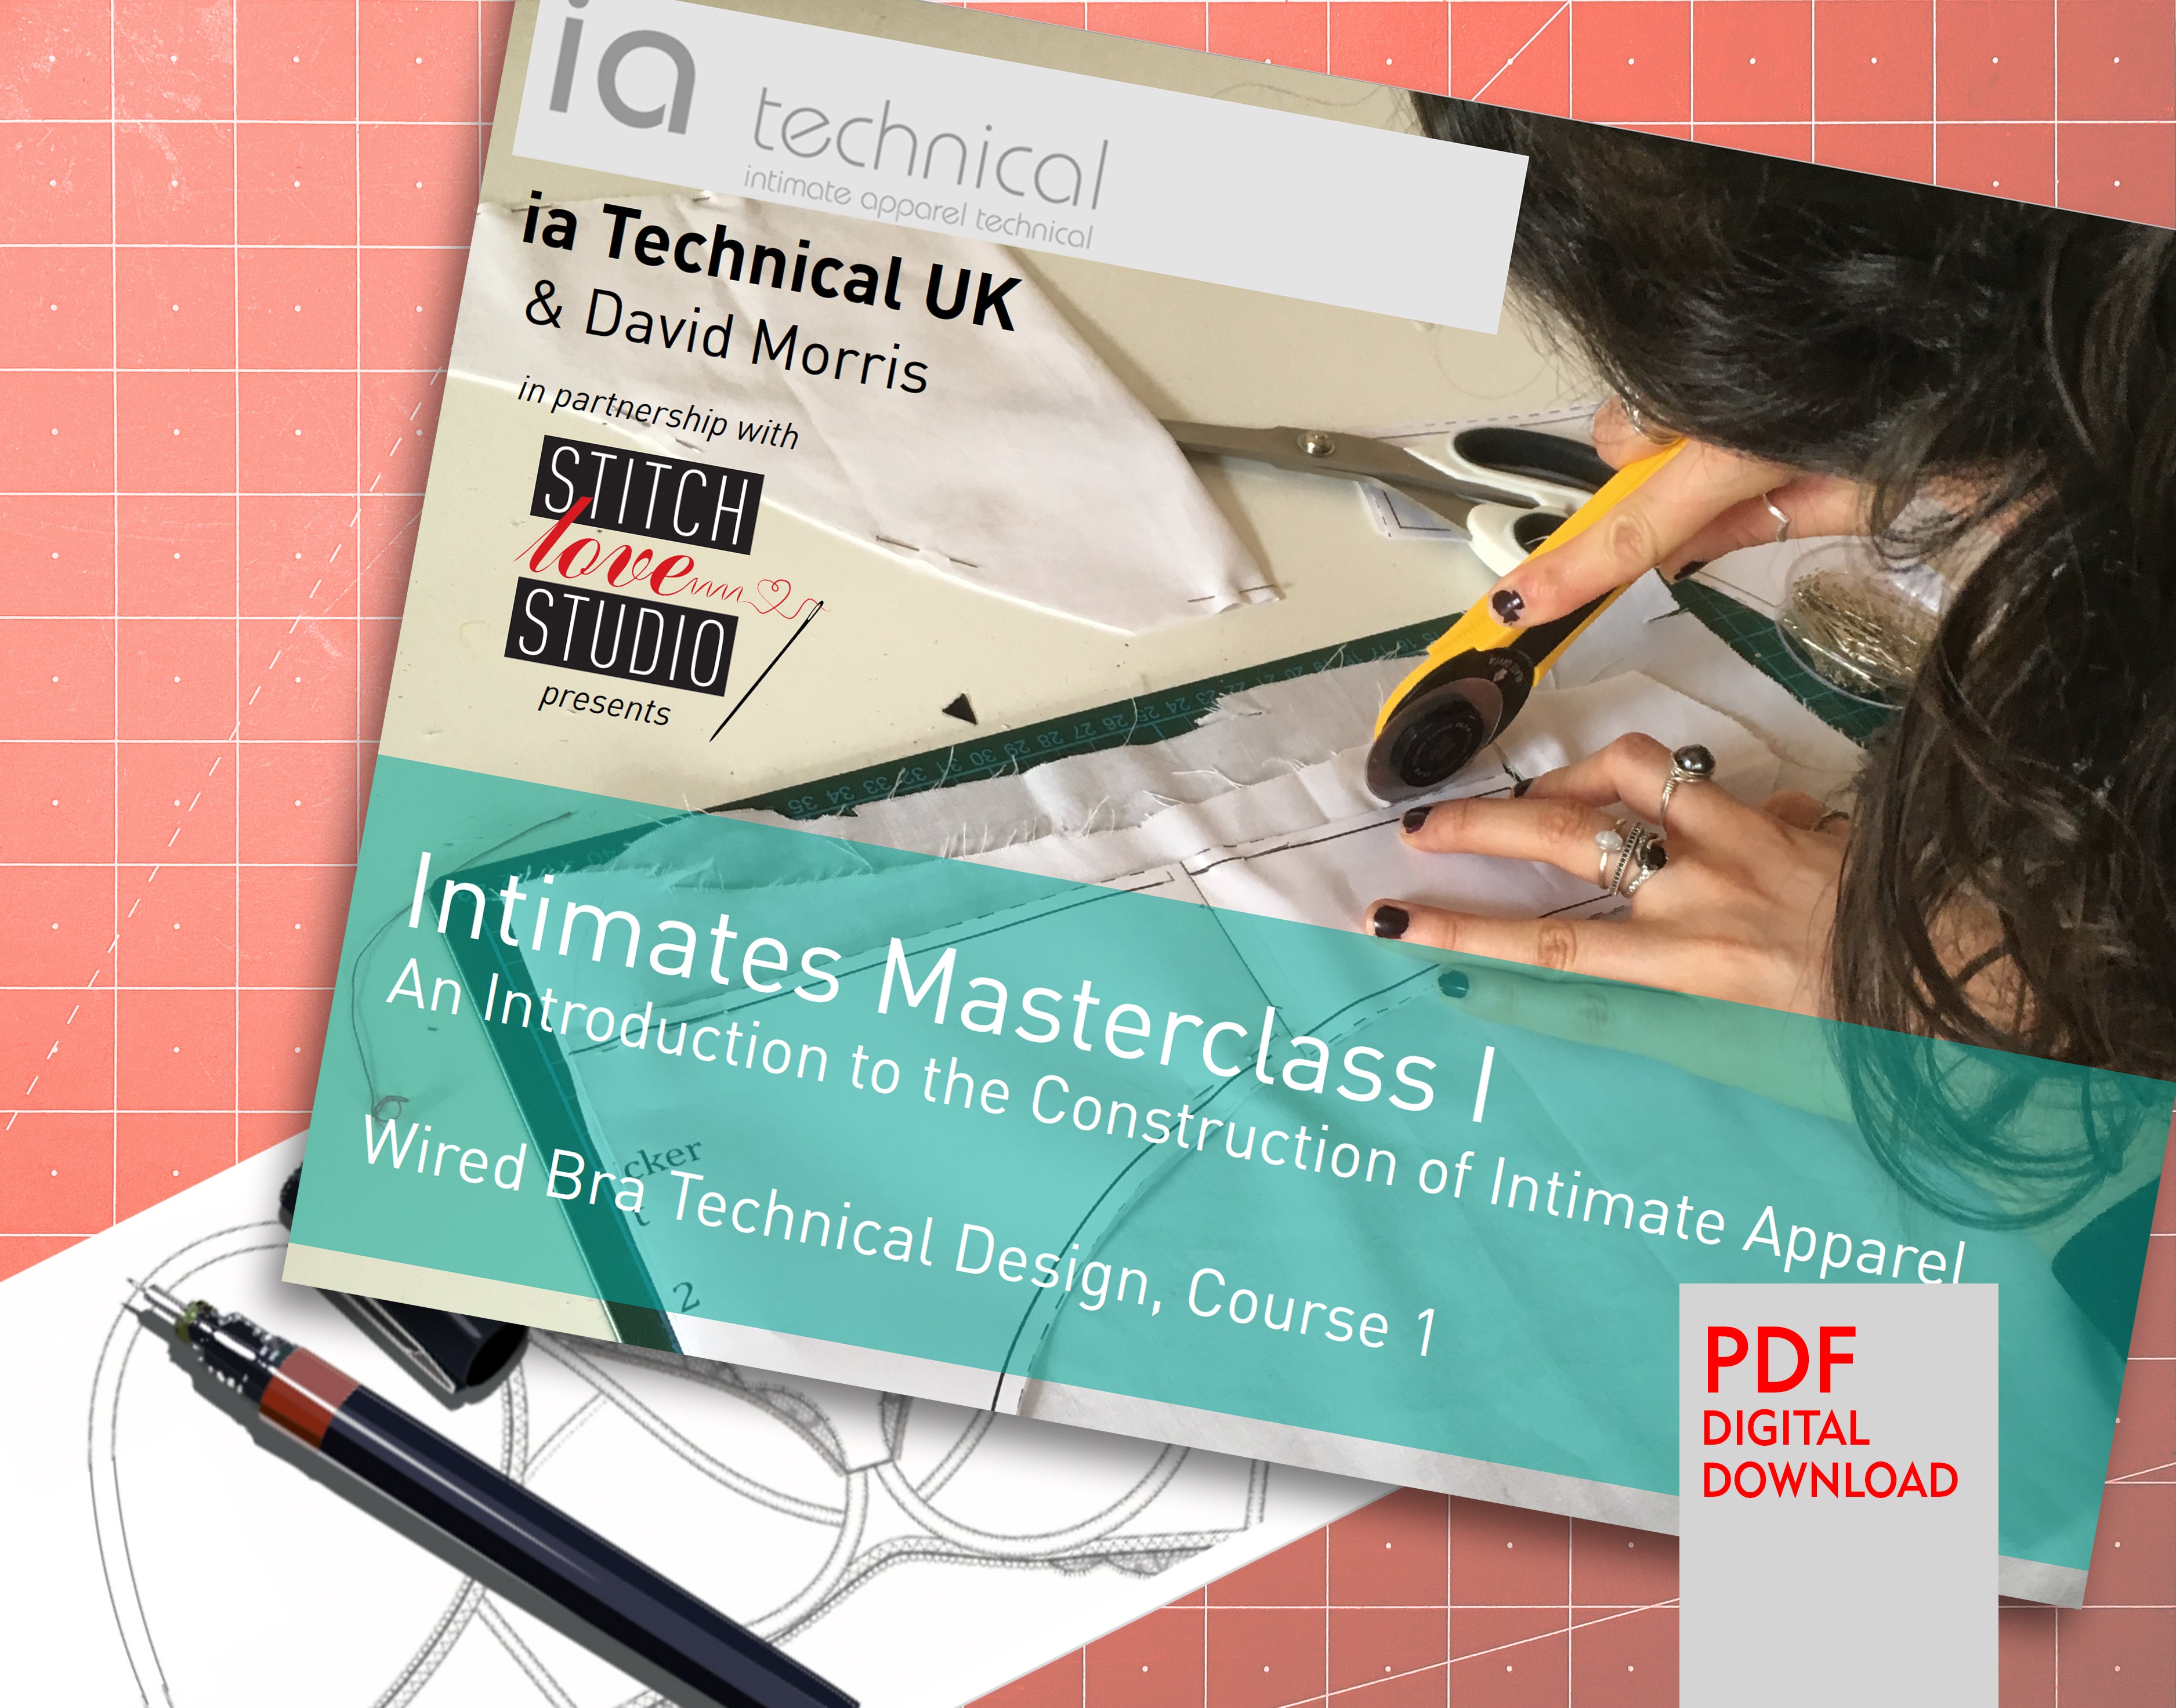 Intimates Masterclass I, Wired Bra Technical Design, Course 1 - Stitch Love Studio